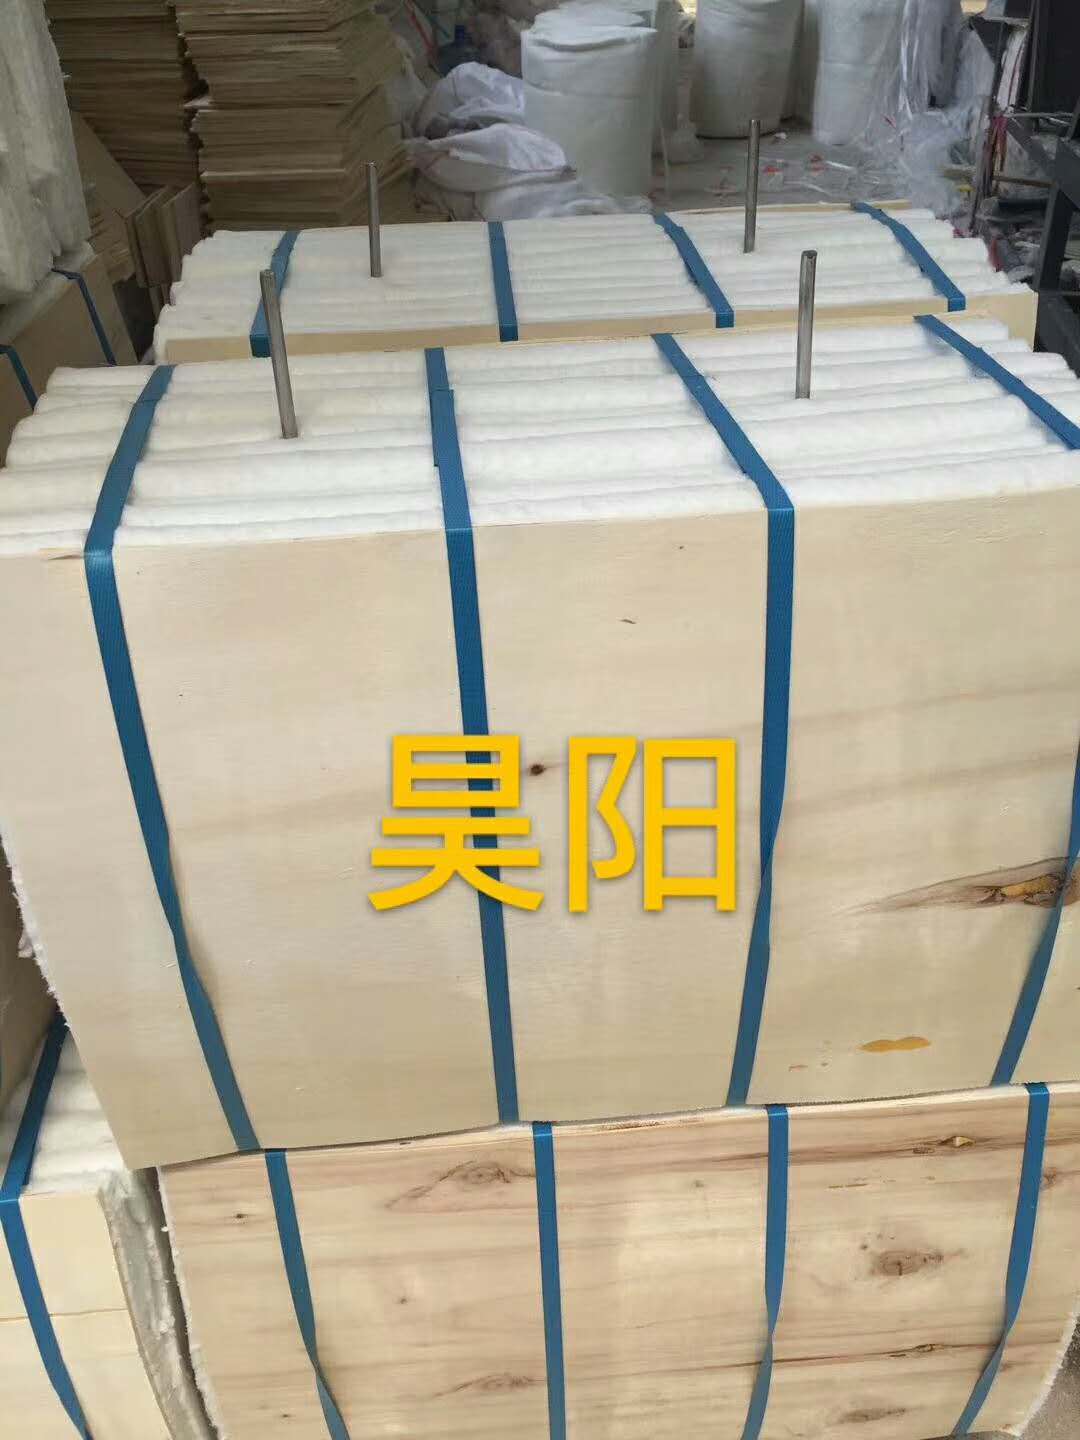 烘箱1260型标准型保温散棉山东生产厂家